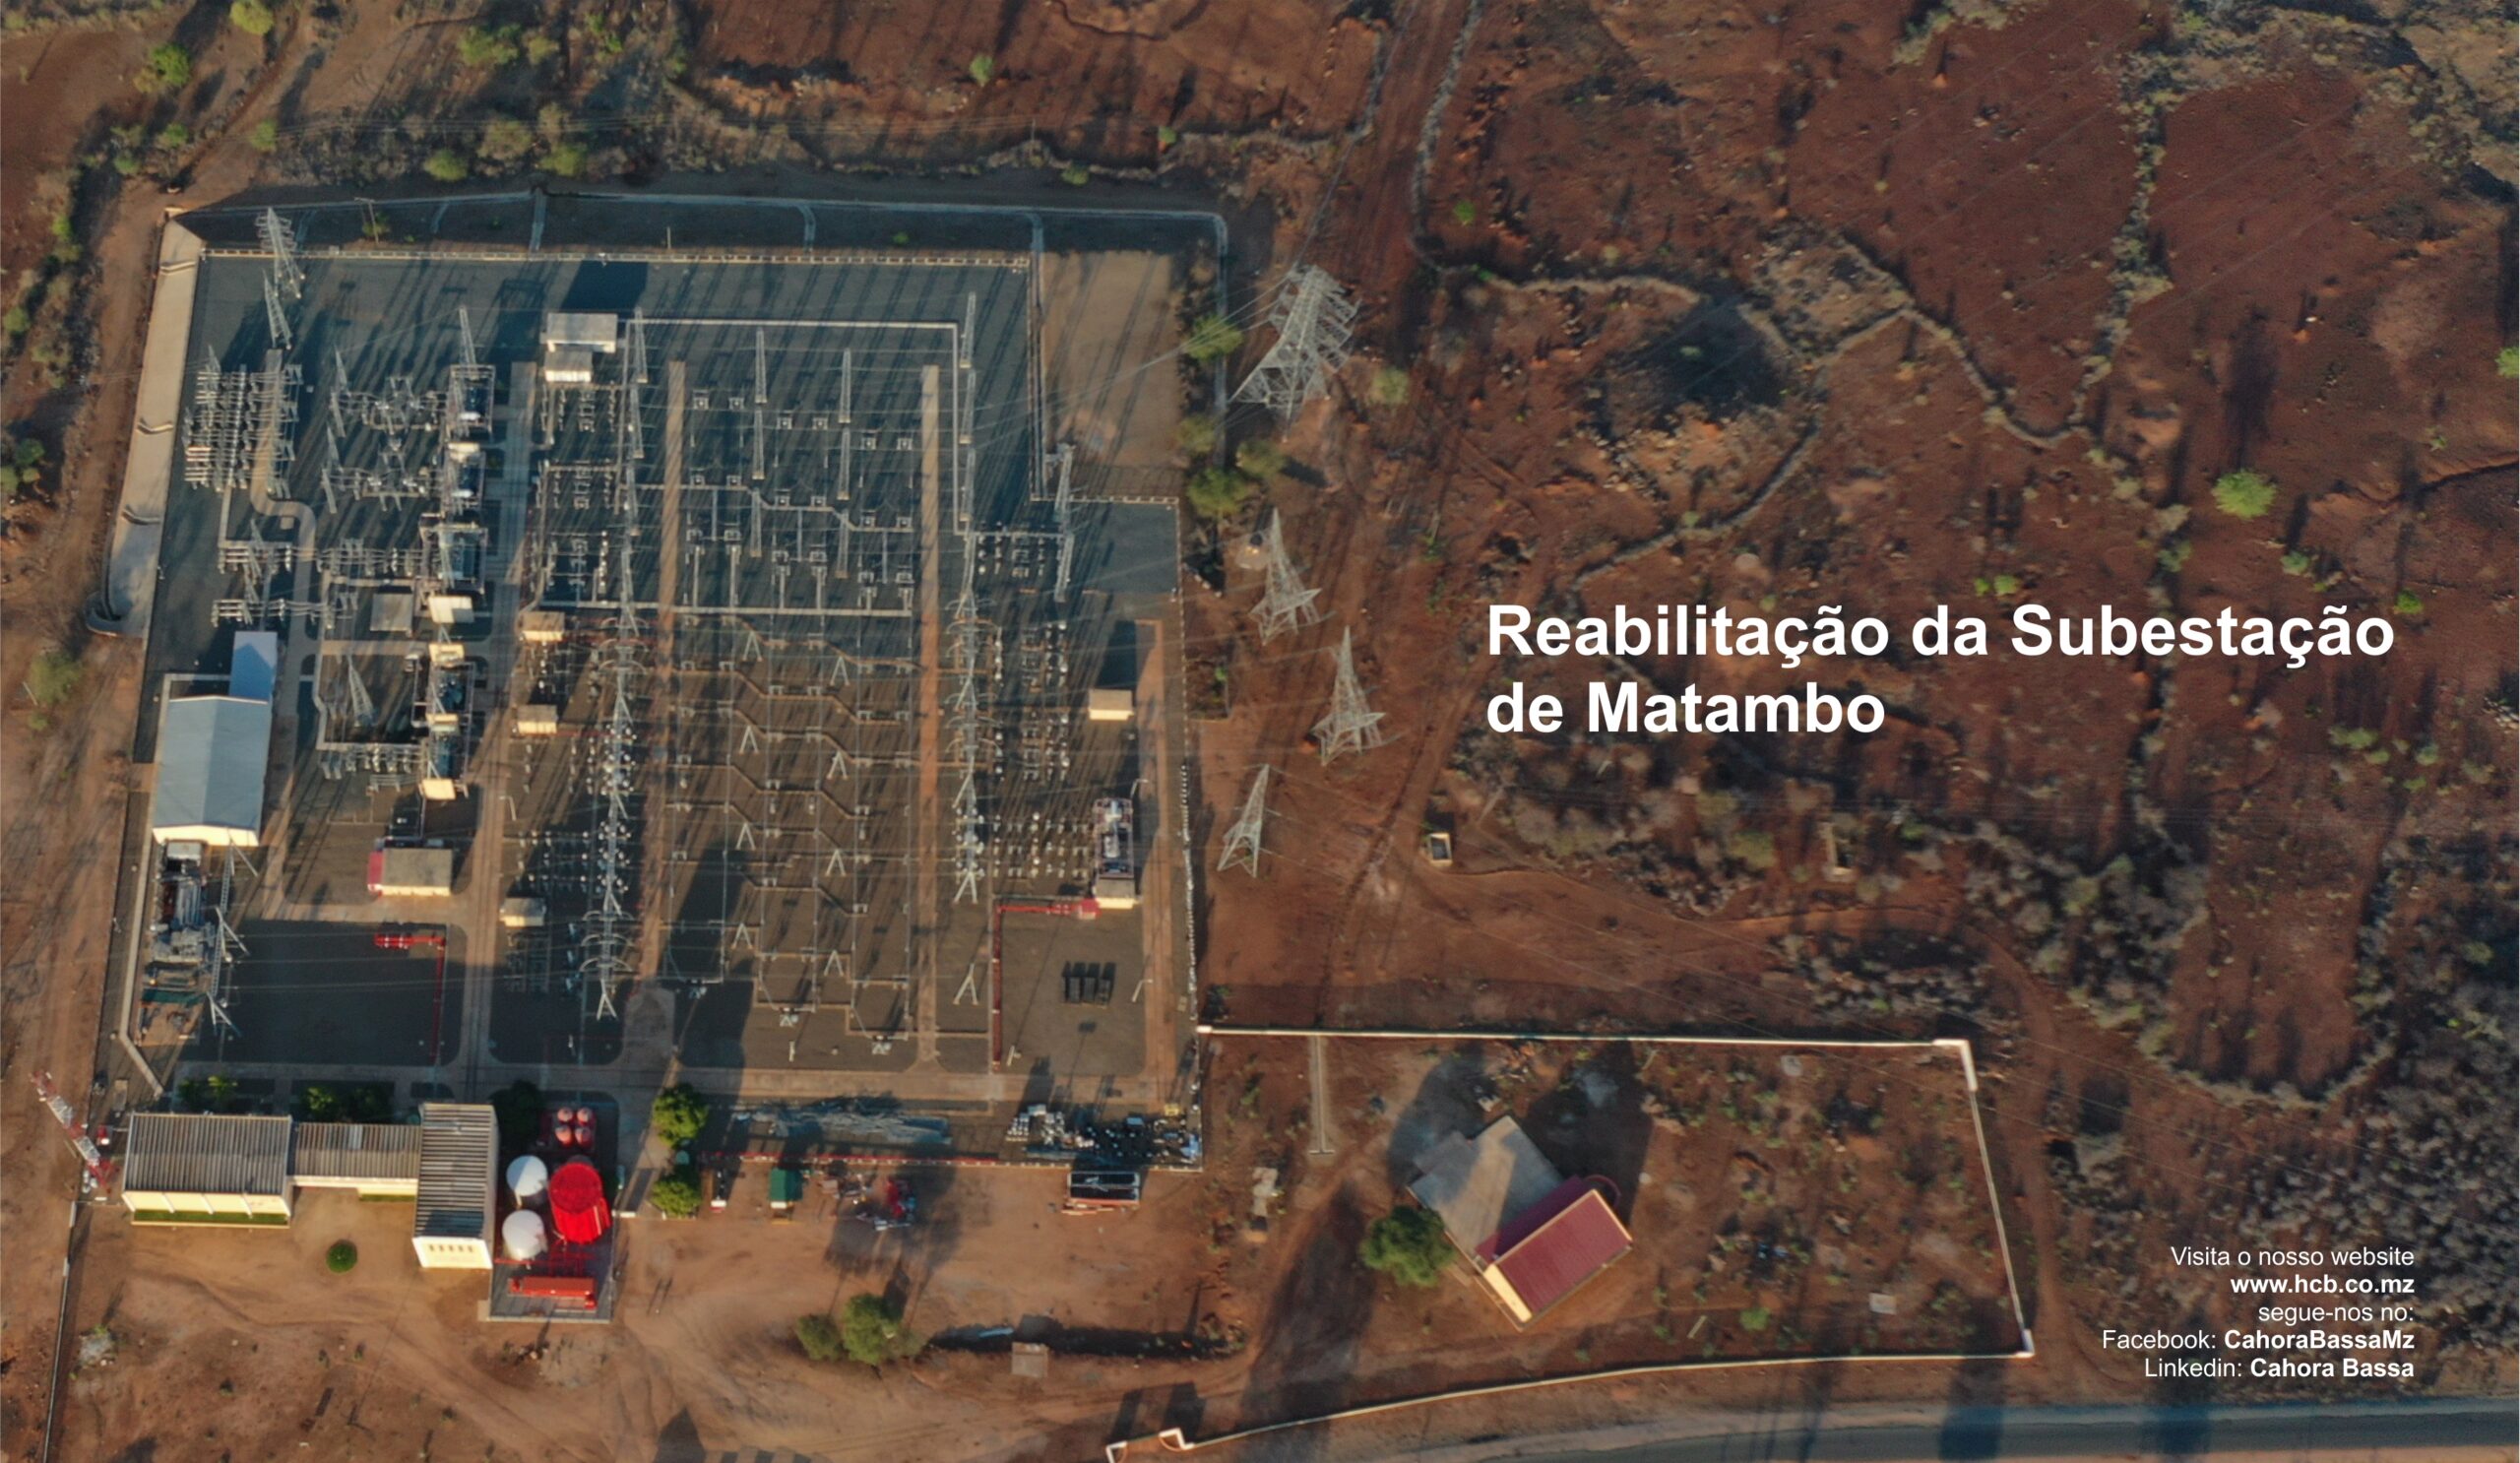 Reabilitação da Subestação de Matambo, 31 de Maio de 2021, TVC e Intra